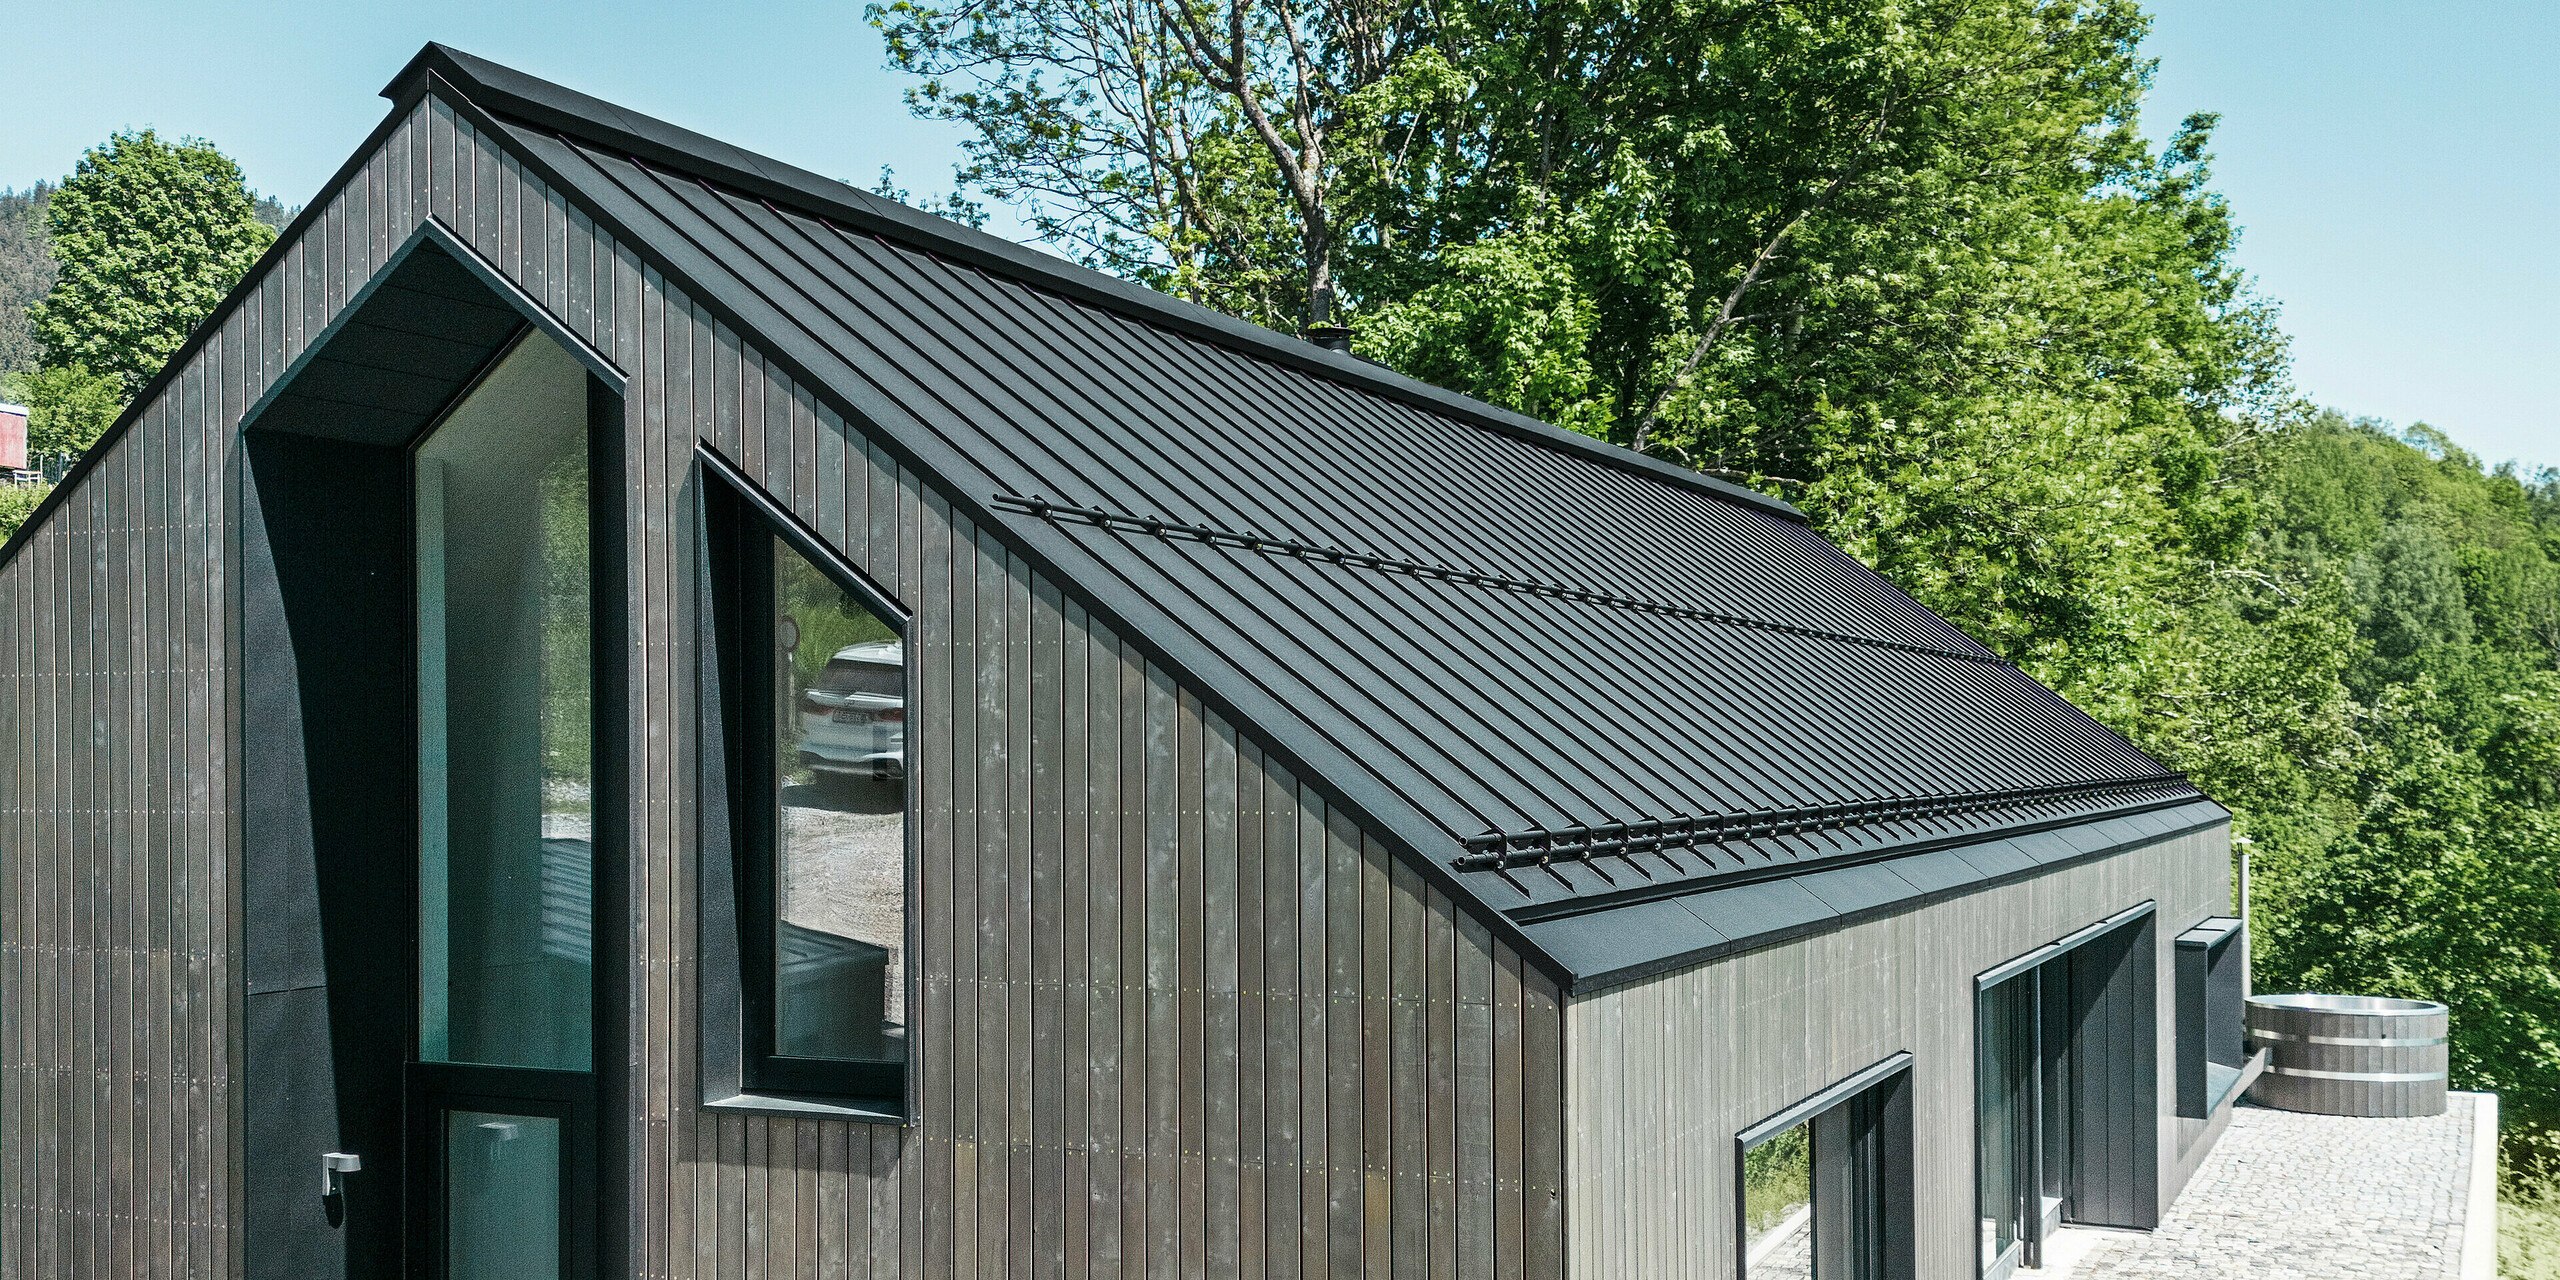 Hochformatbild von luxuriösem Holzmassivhaus in Kuncice, CZ. Das Einfamilienhaus mit den großen Fenstern verfügt über ein PREFALZ-Dach aus Aluminium in Schwarz.